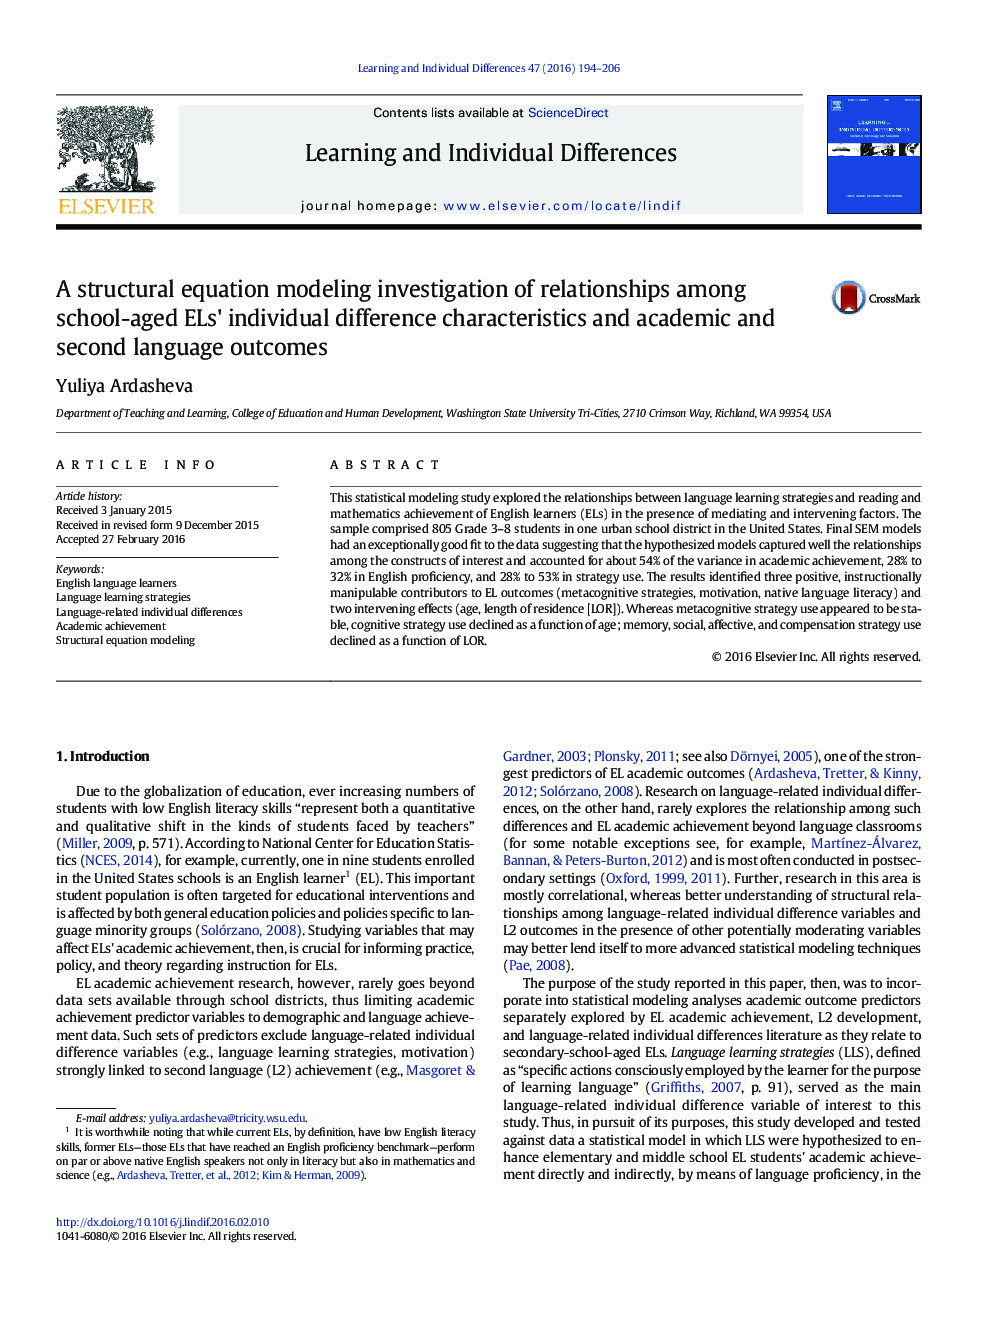 یک تحقیقات مدلسازی معادله ساختاری از روابط بین ویژگی های تفاوت فردی ELS در سن مدرسه و نتایج زبان آکادمیک و دوم